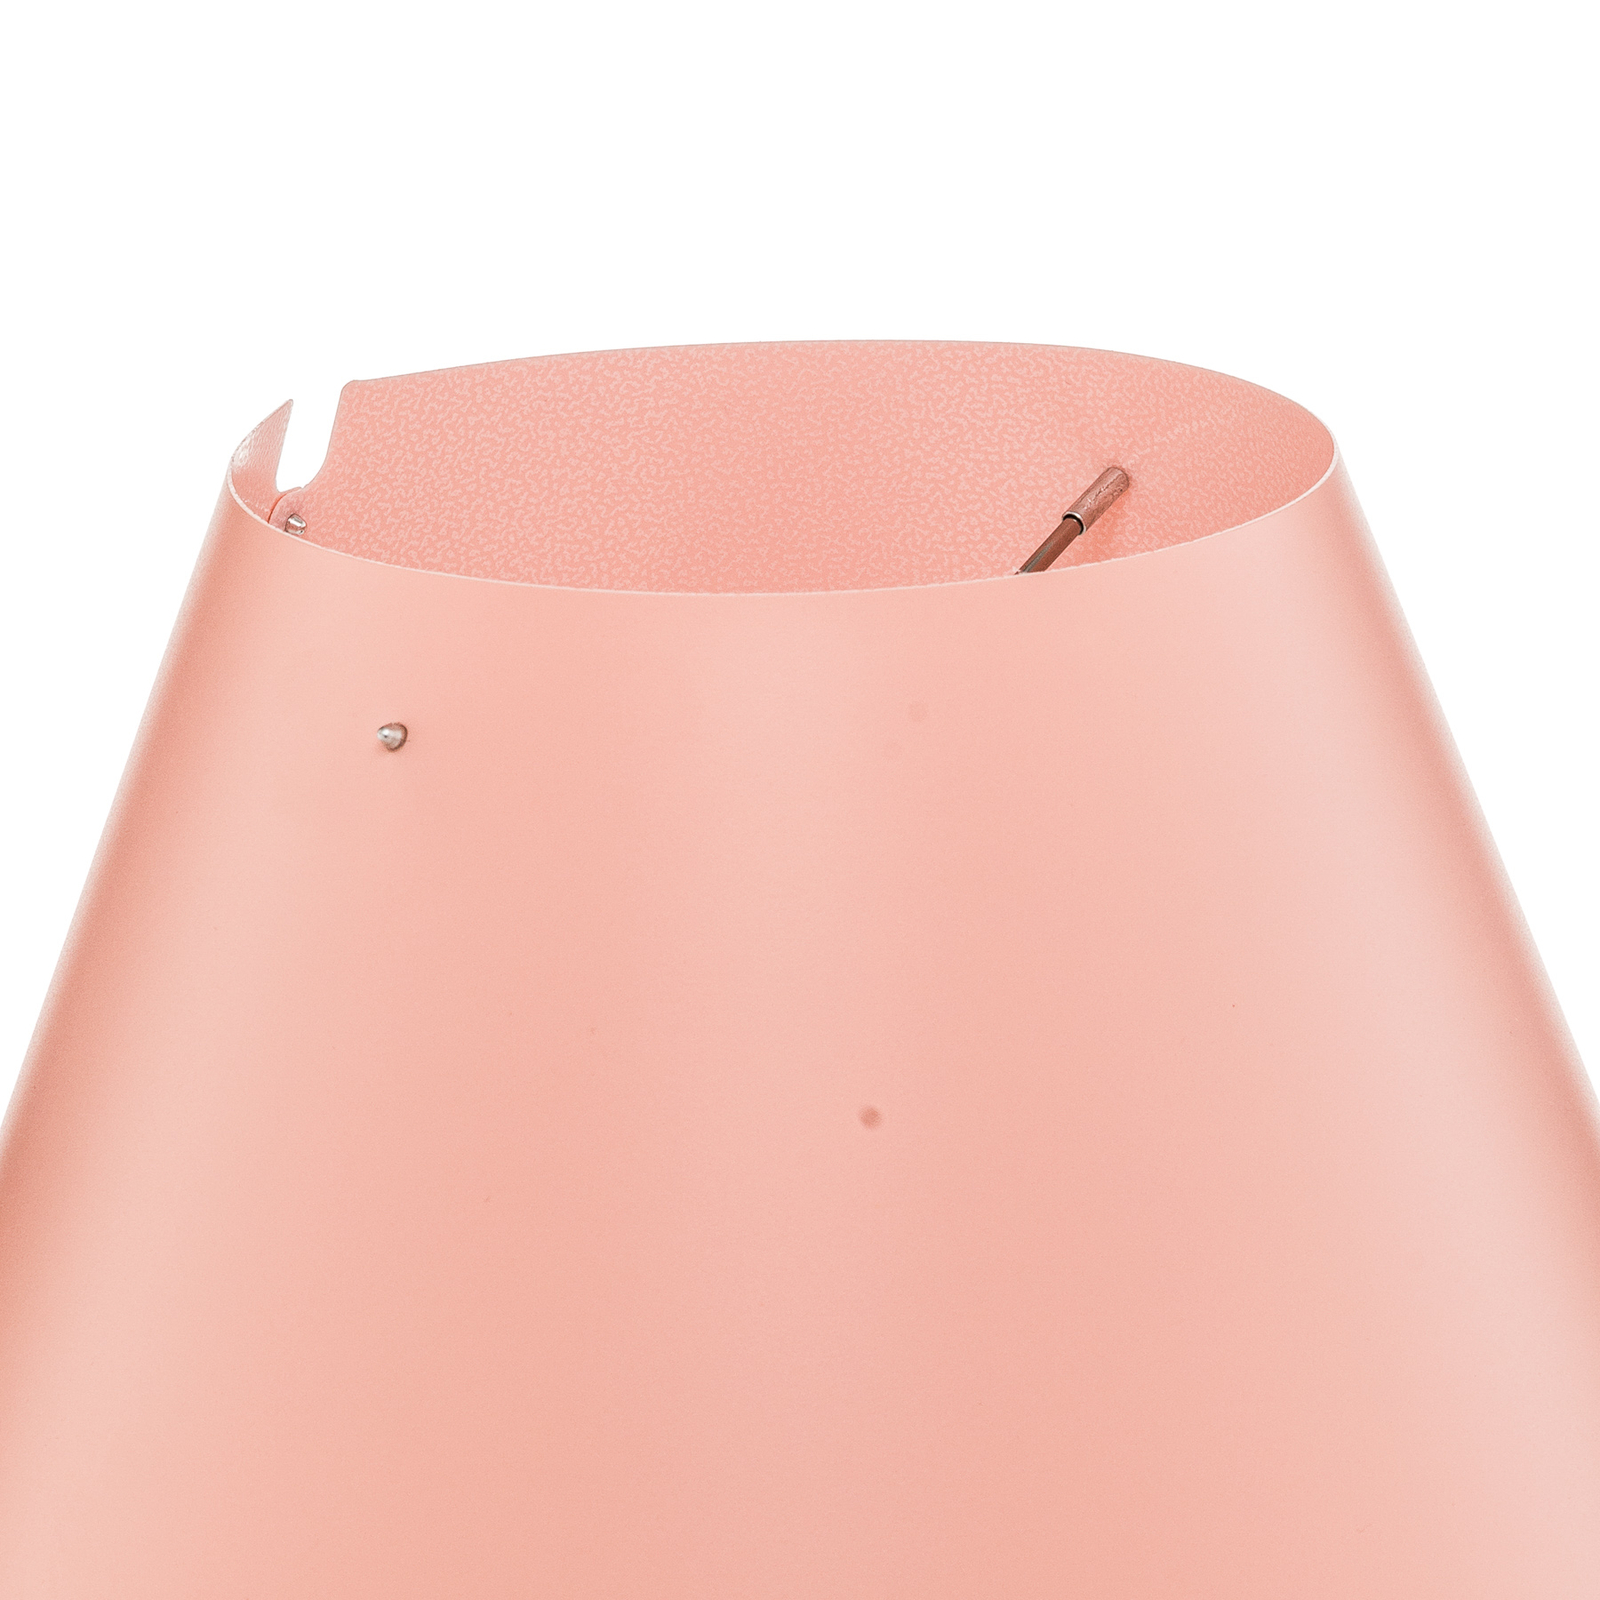 Luceplan Costanzina stolná lampa hliník ružová